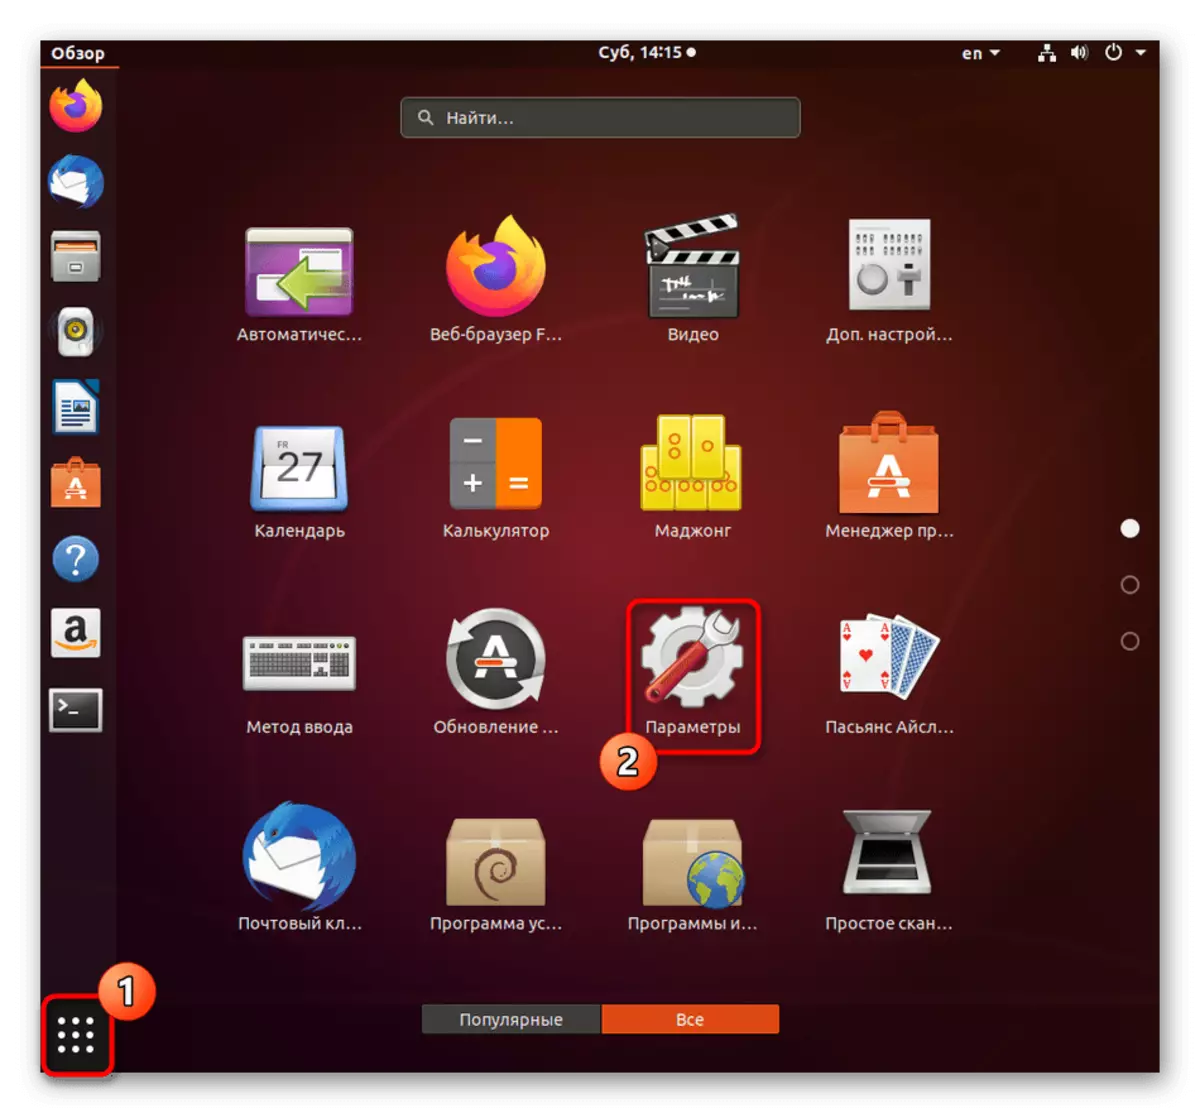 Μεταβείτε στις παραμέτρους για να προσθέσετε μια νέα πηγή εισόδου στο Ubuntu